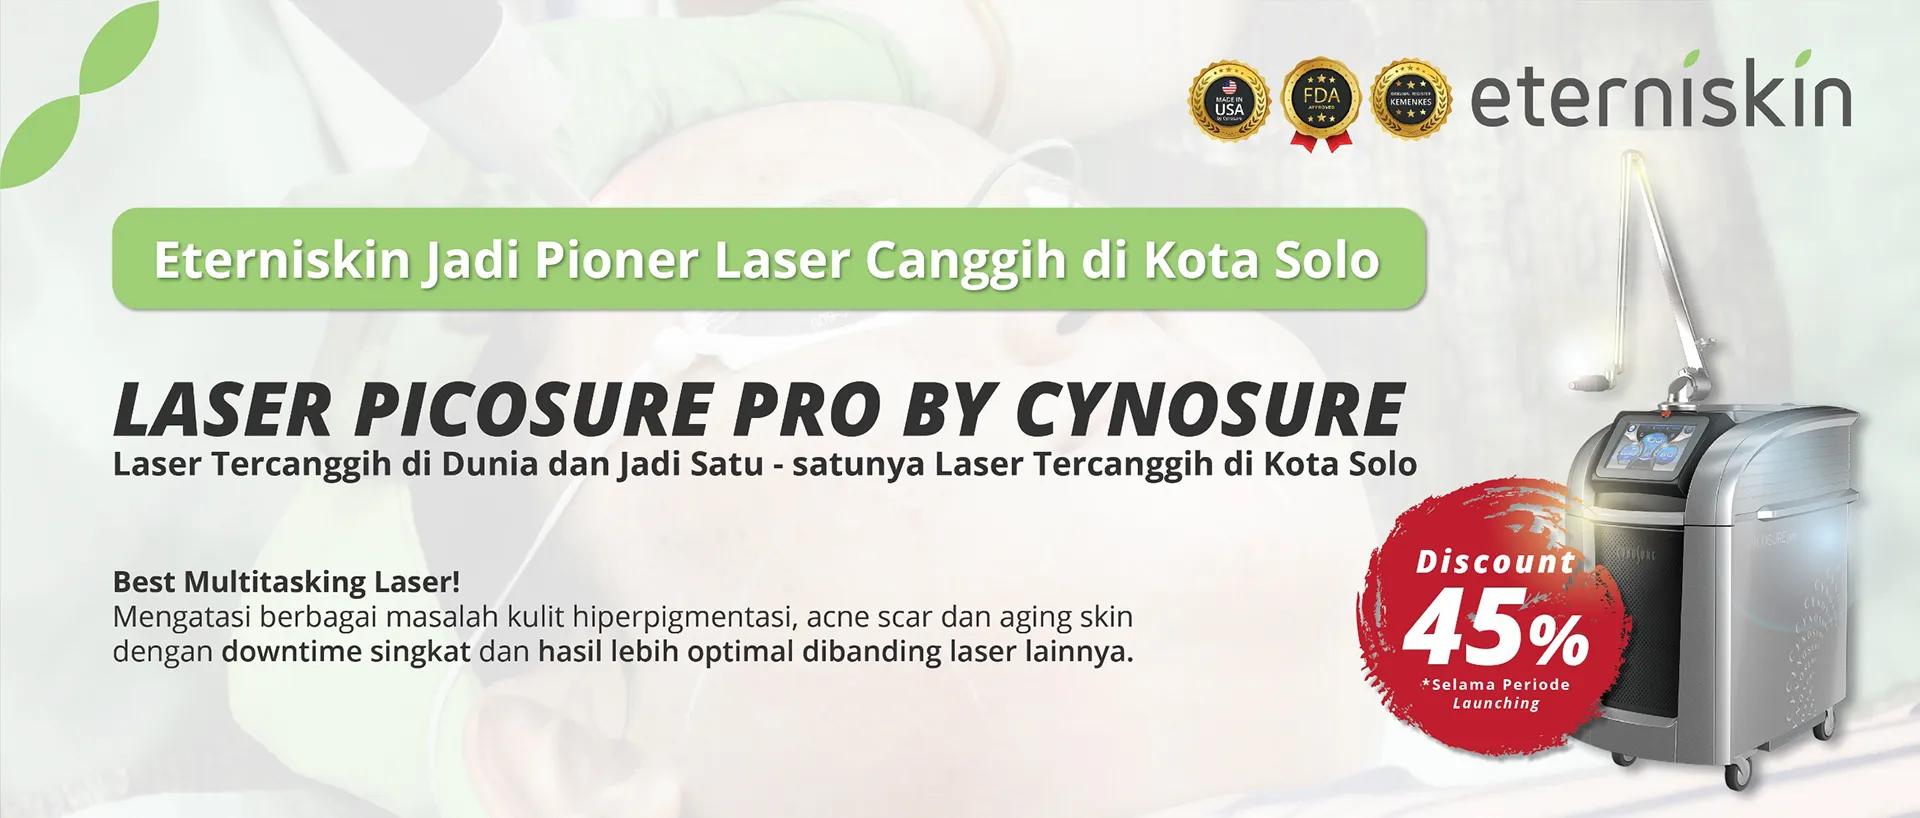 Laser Picosure untuk Atasi Flek di Klinik Kecantikan Eterniskin